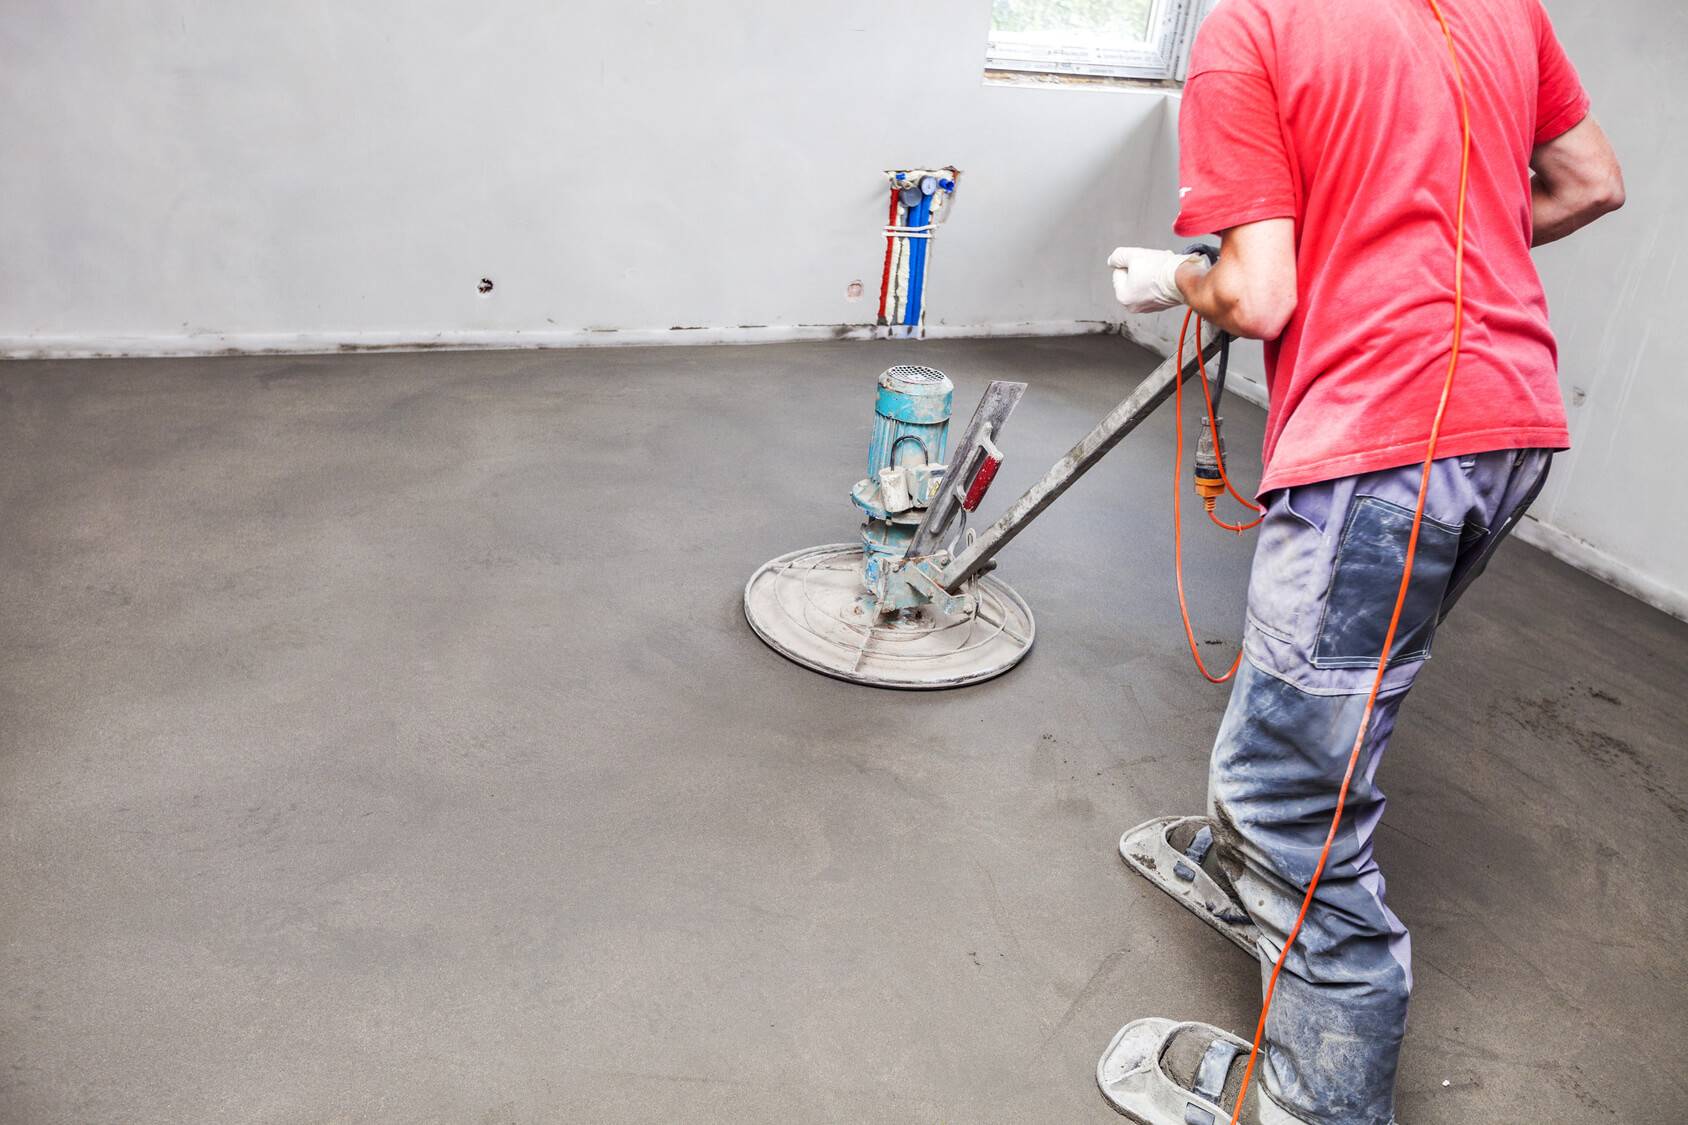 Затирка бетона: своими руками выравниваем стяжку без пыли и дефектов | блог о бетоне